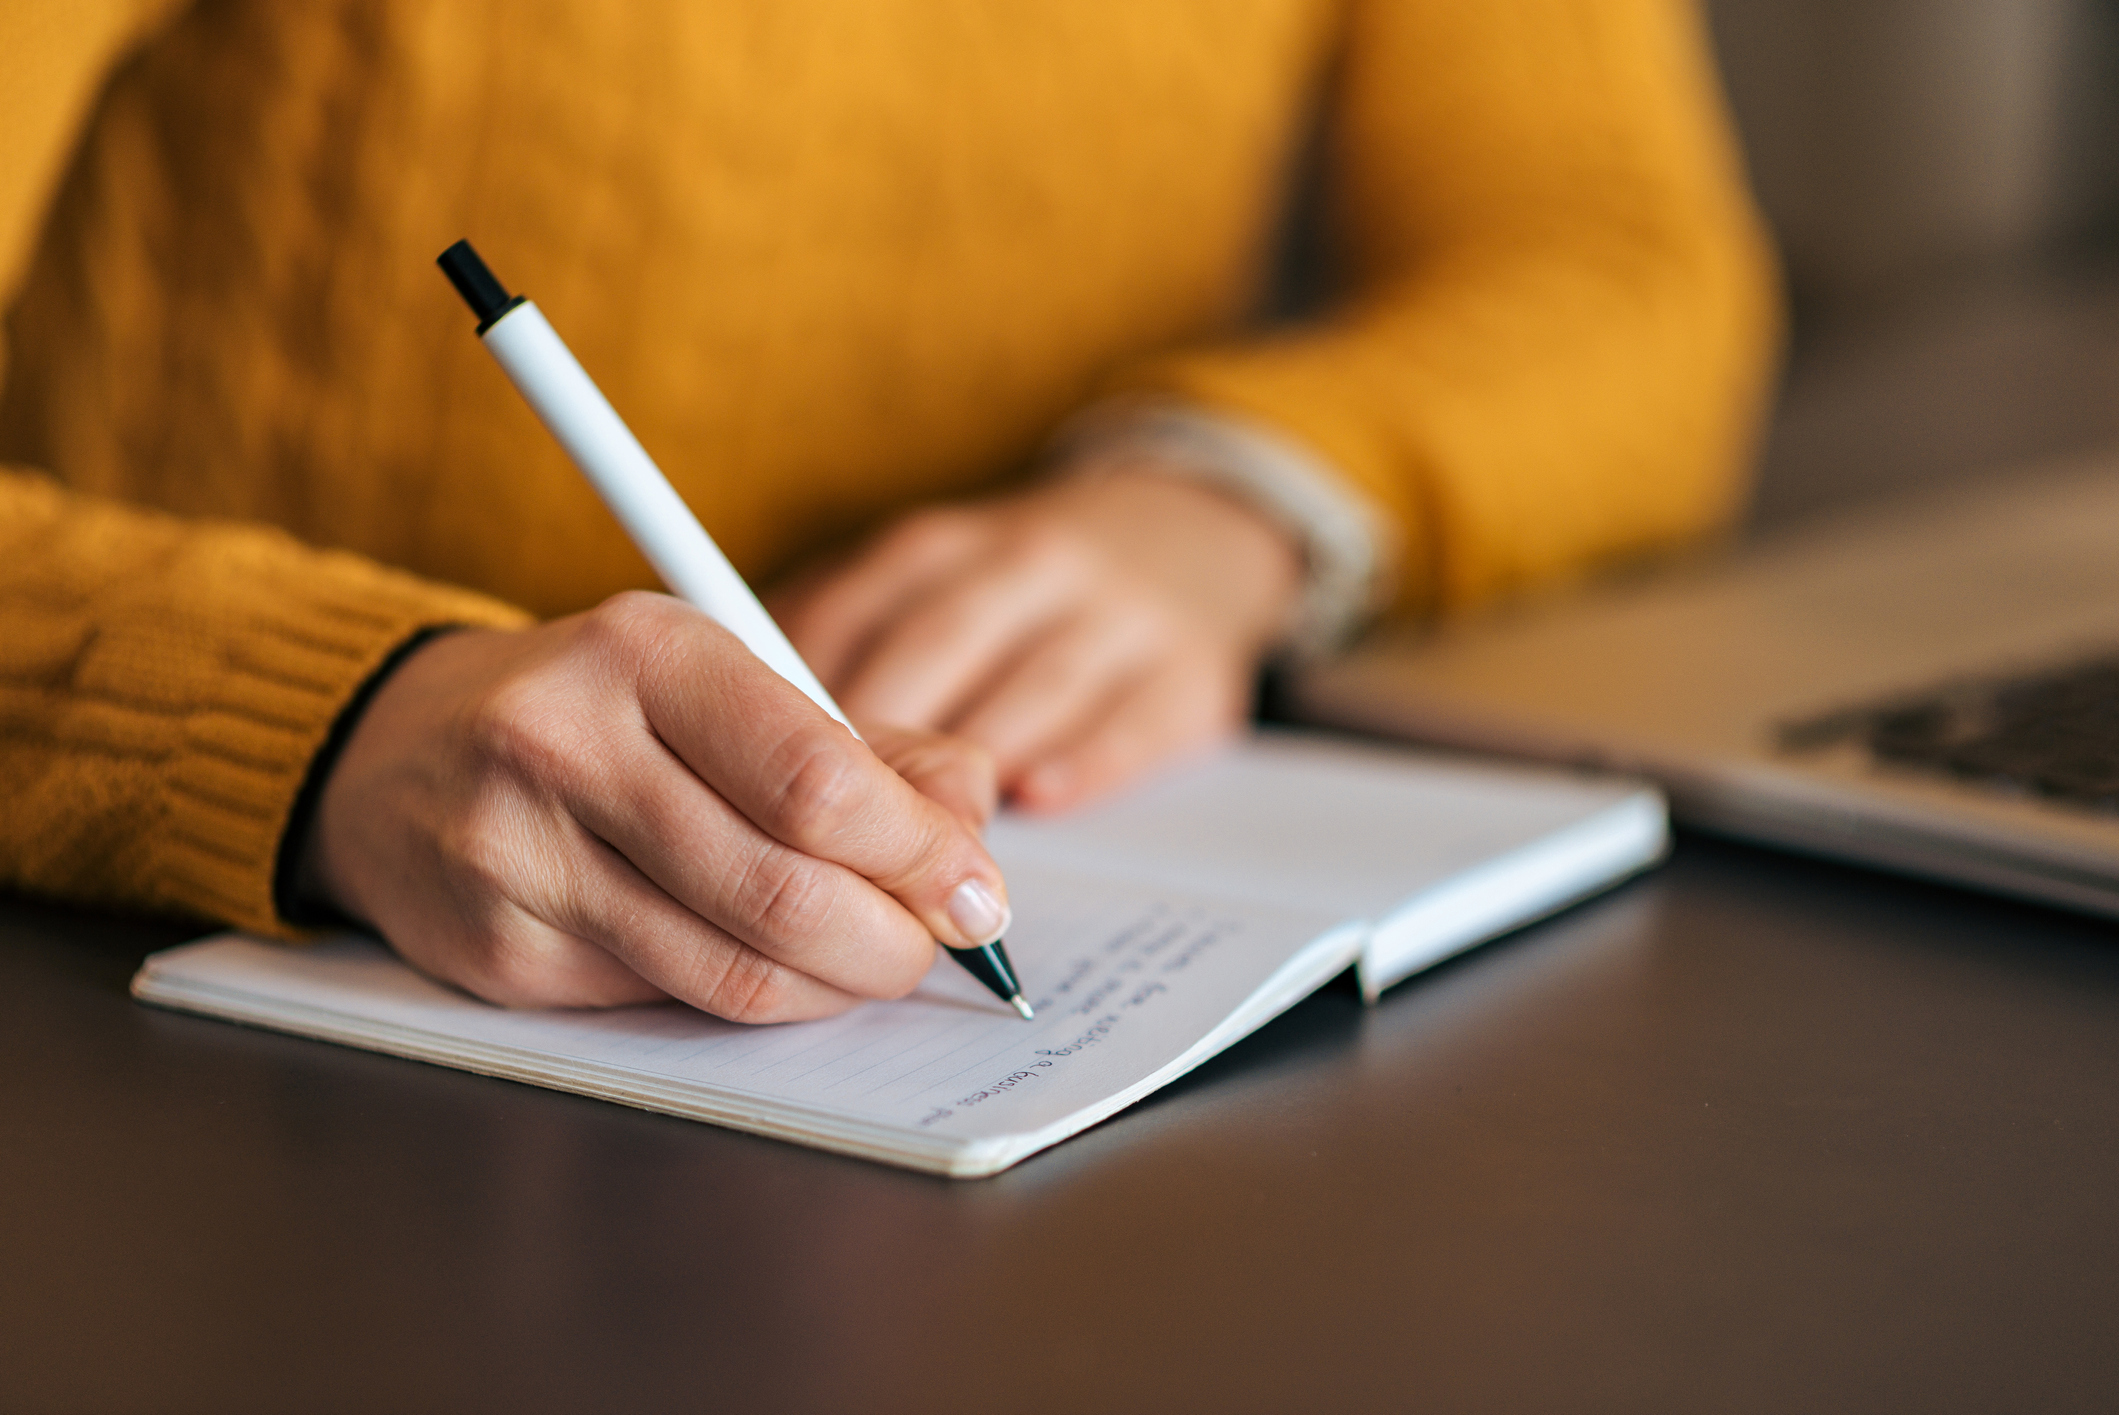 Imagem mostra uma mão segurando uma caneta fazendo anotações em um caderno